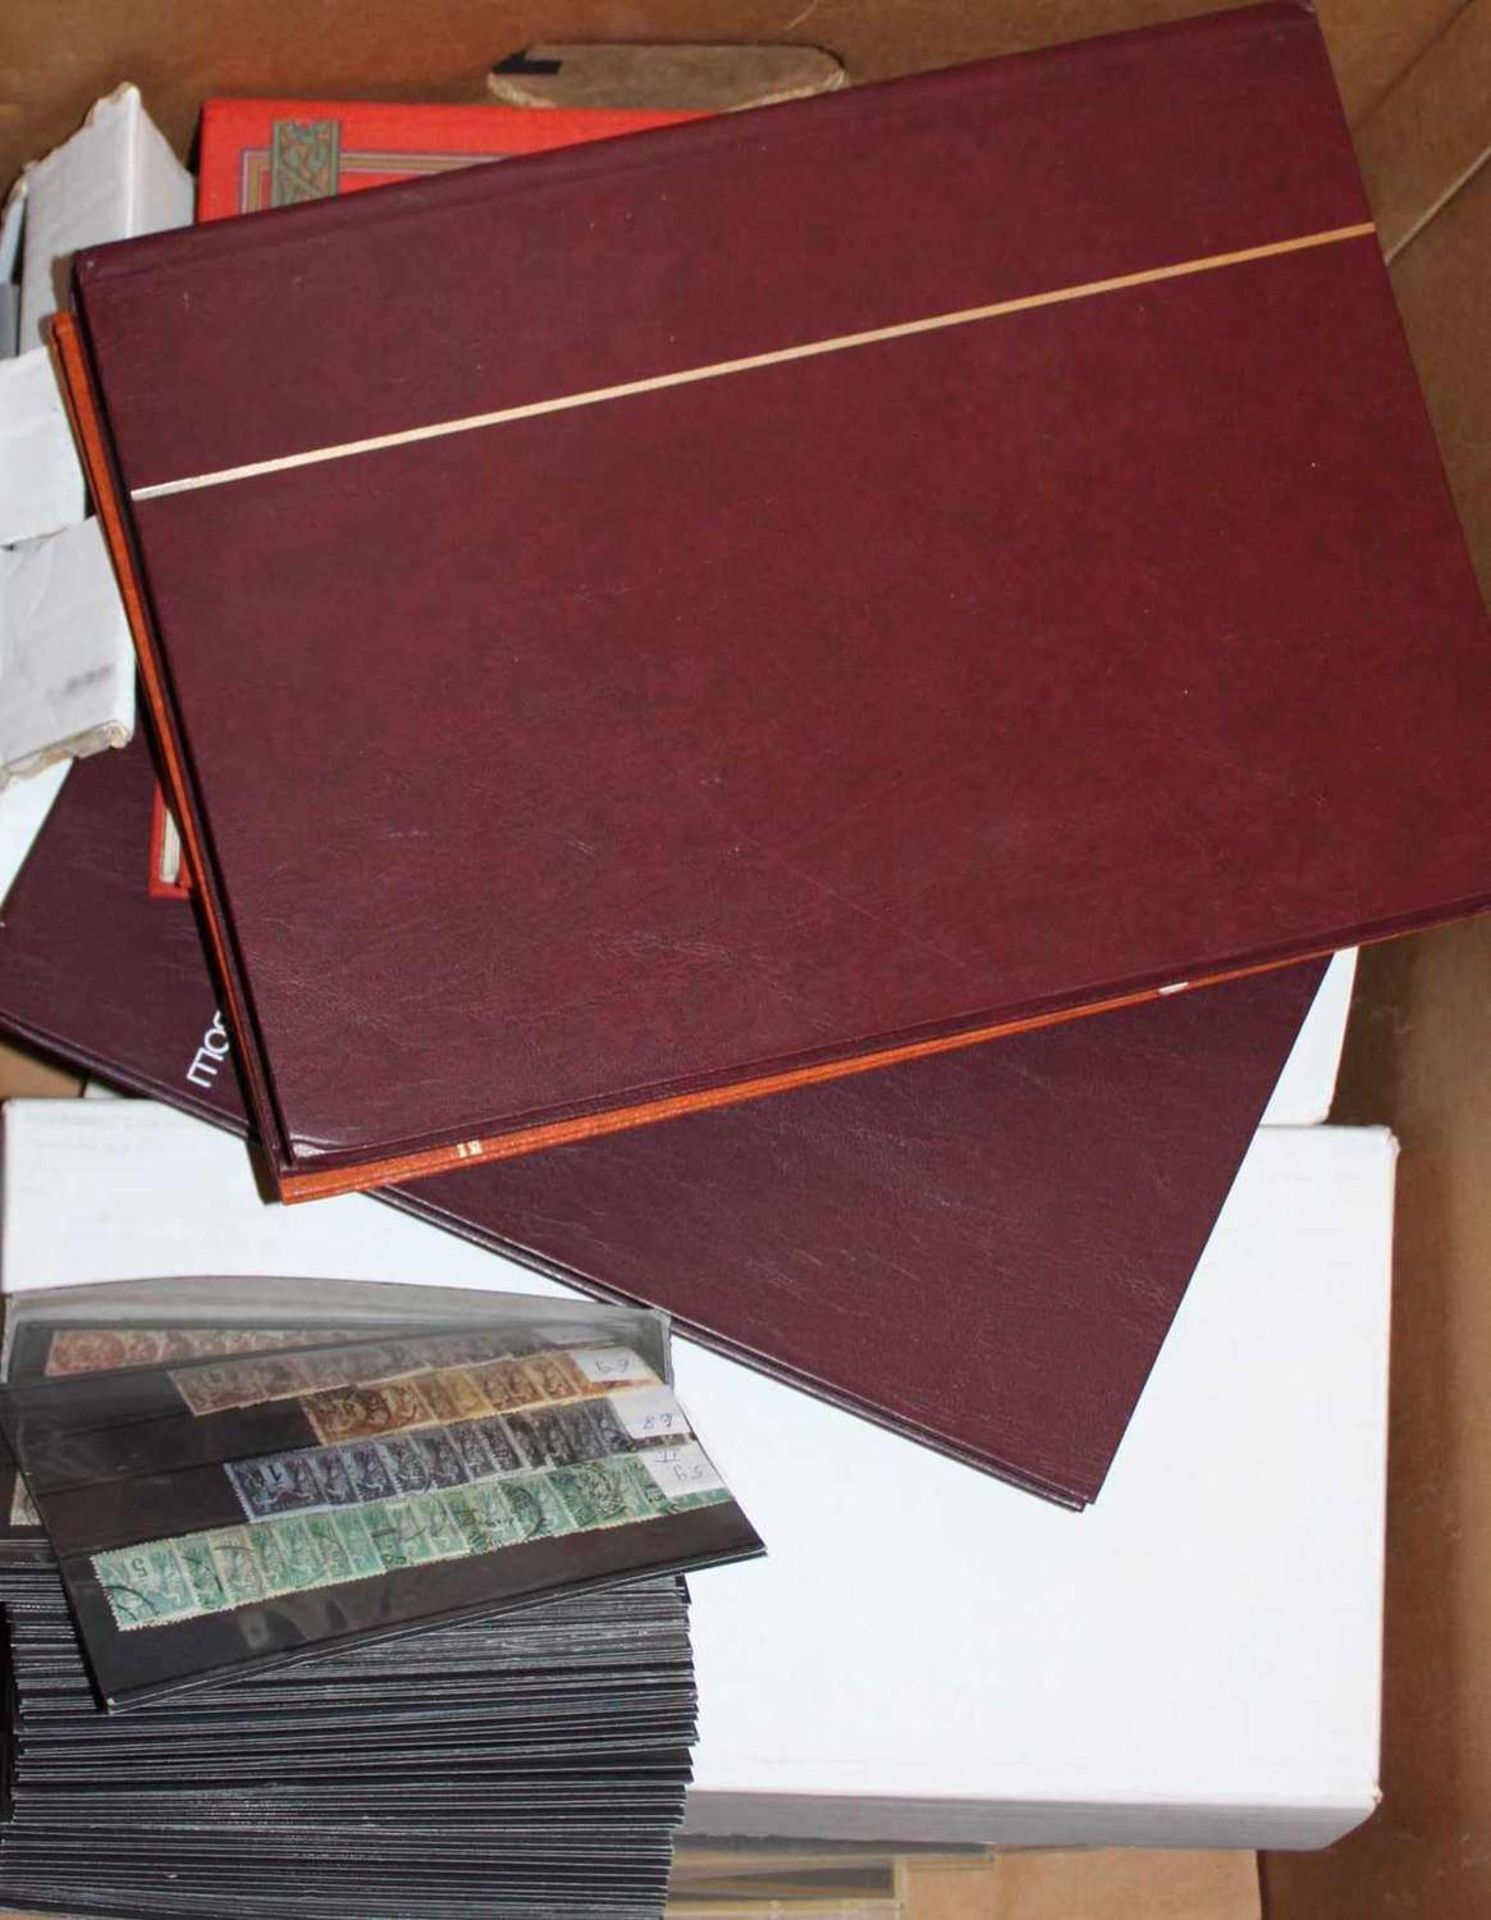 Restekarton Philatelie, dabei 2 große Schachteln mit Hunderten-Steckkarten, Motivmarken z. B. UDSSR,